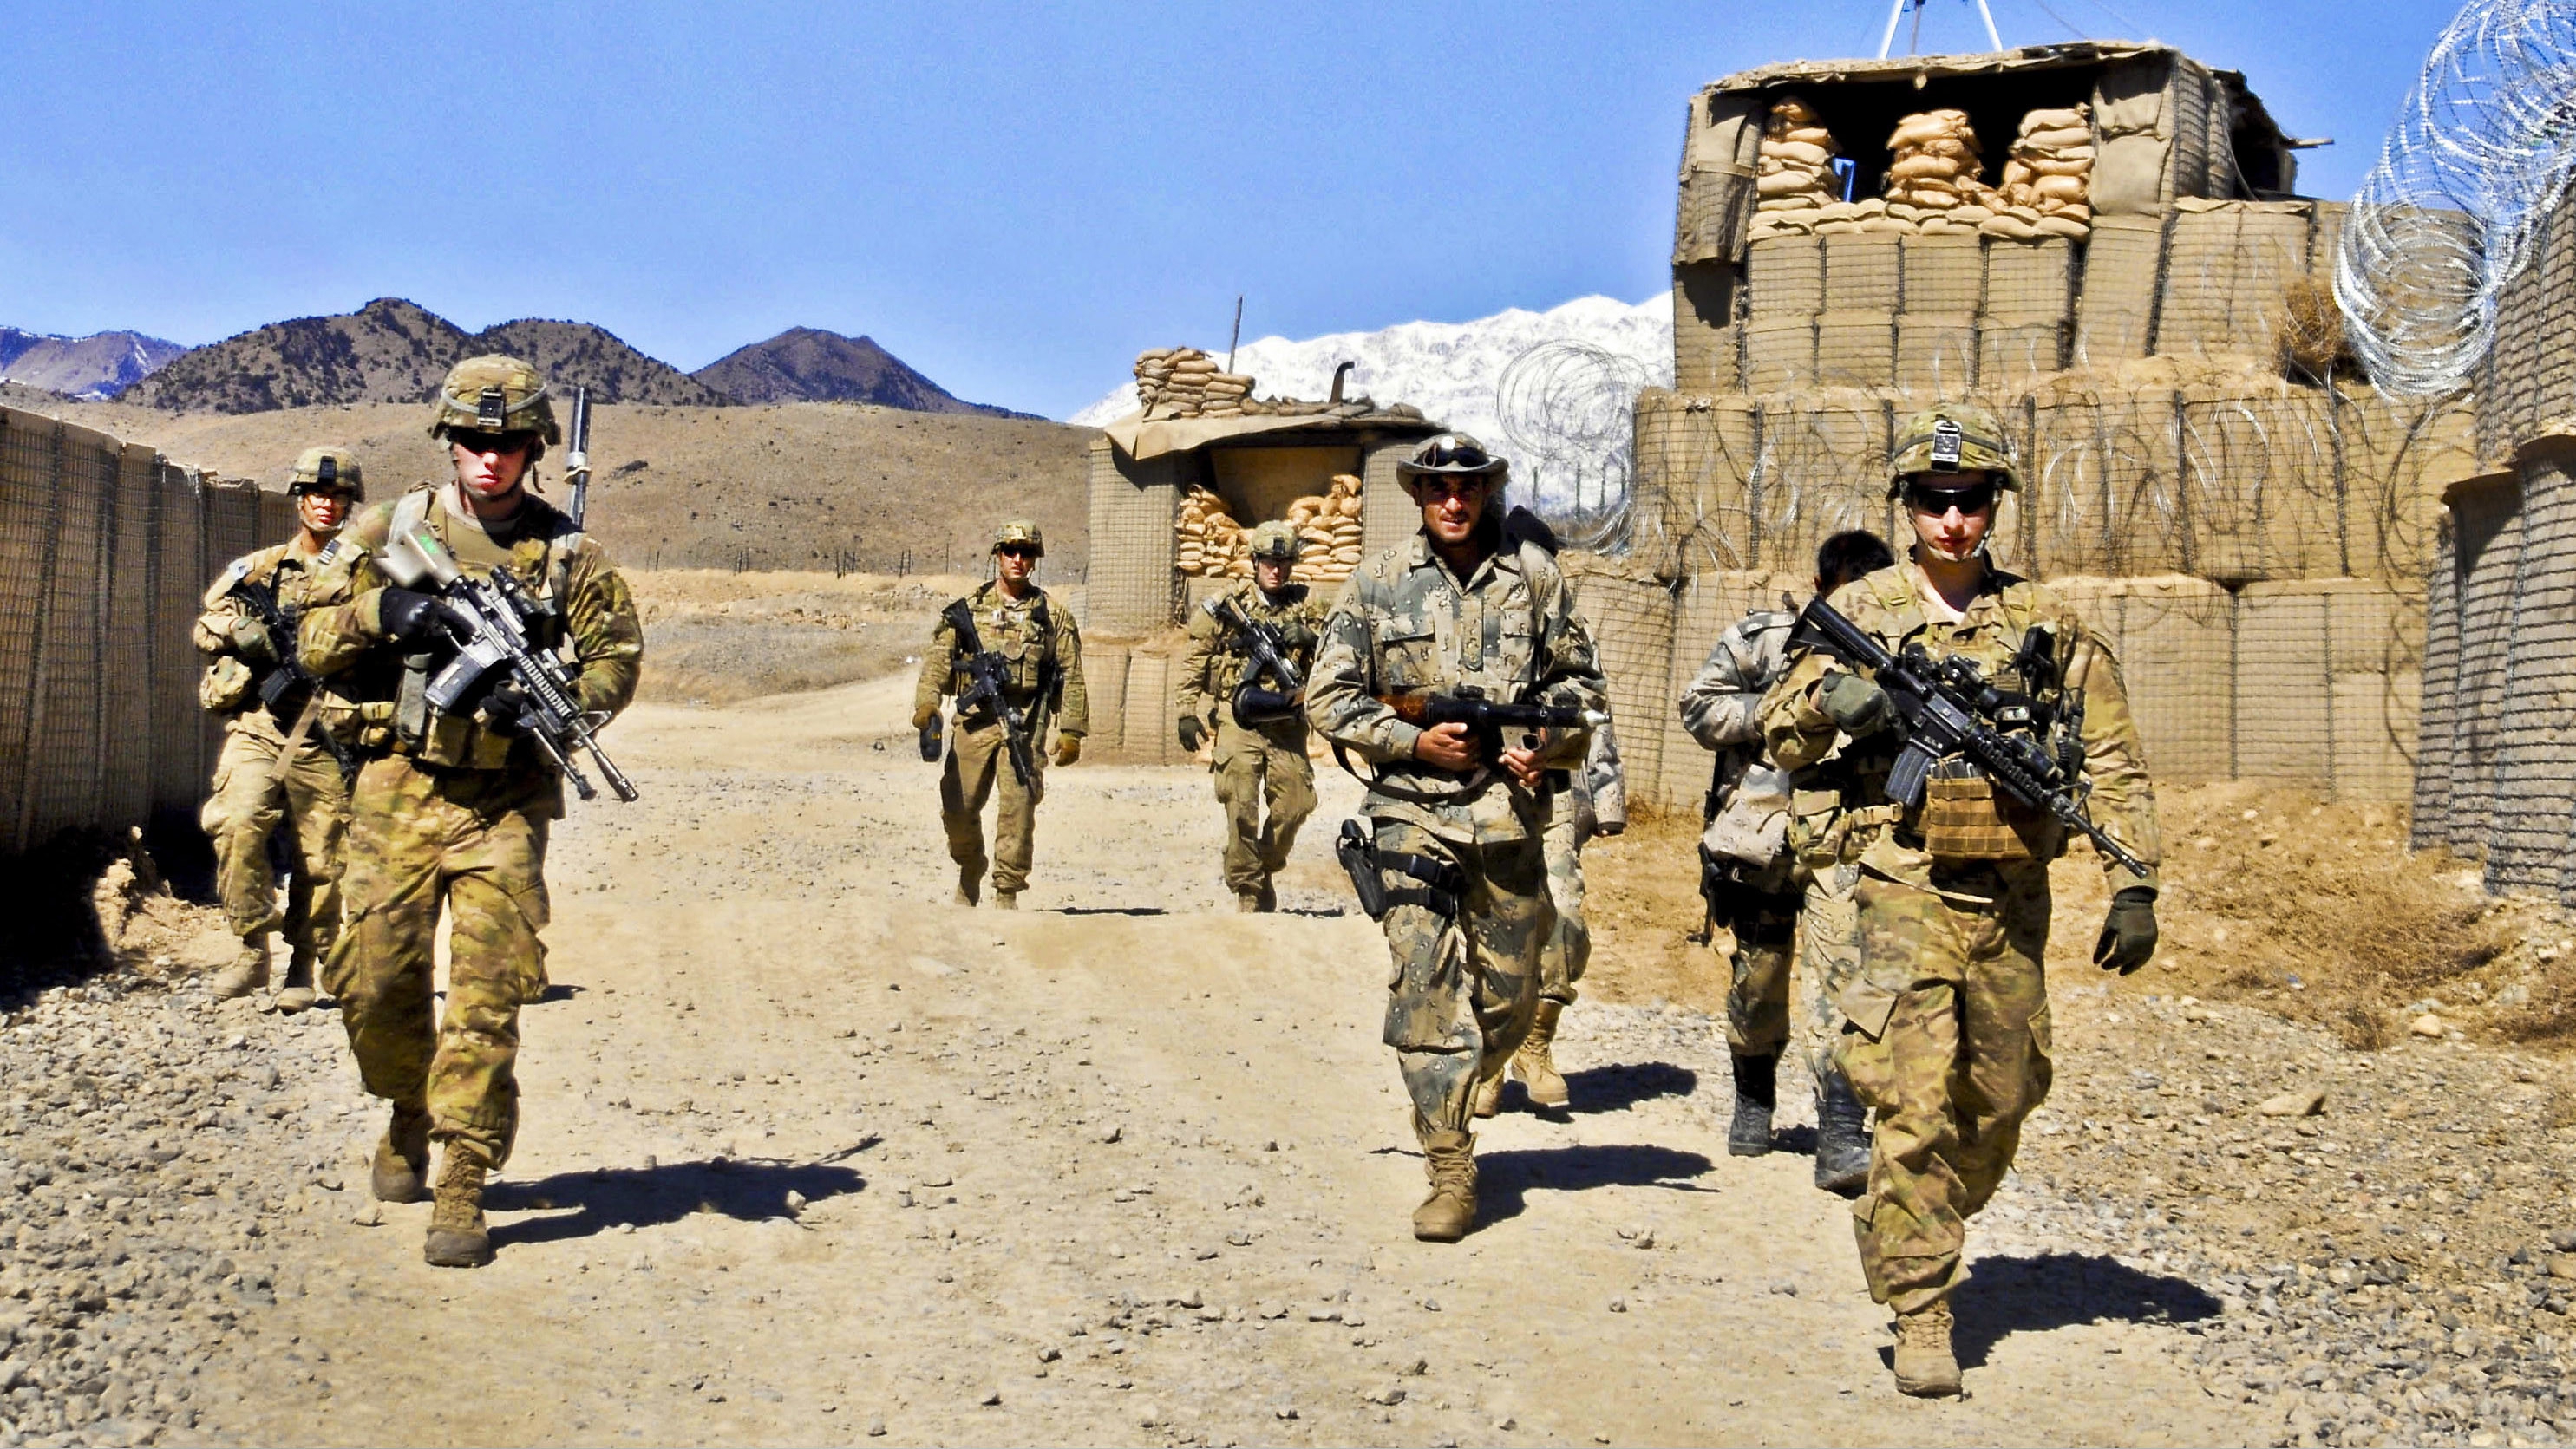 Клинцевич: США создали в Афганистане систему управляемого хаоса Политика